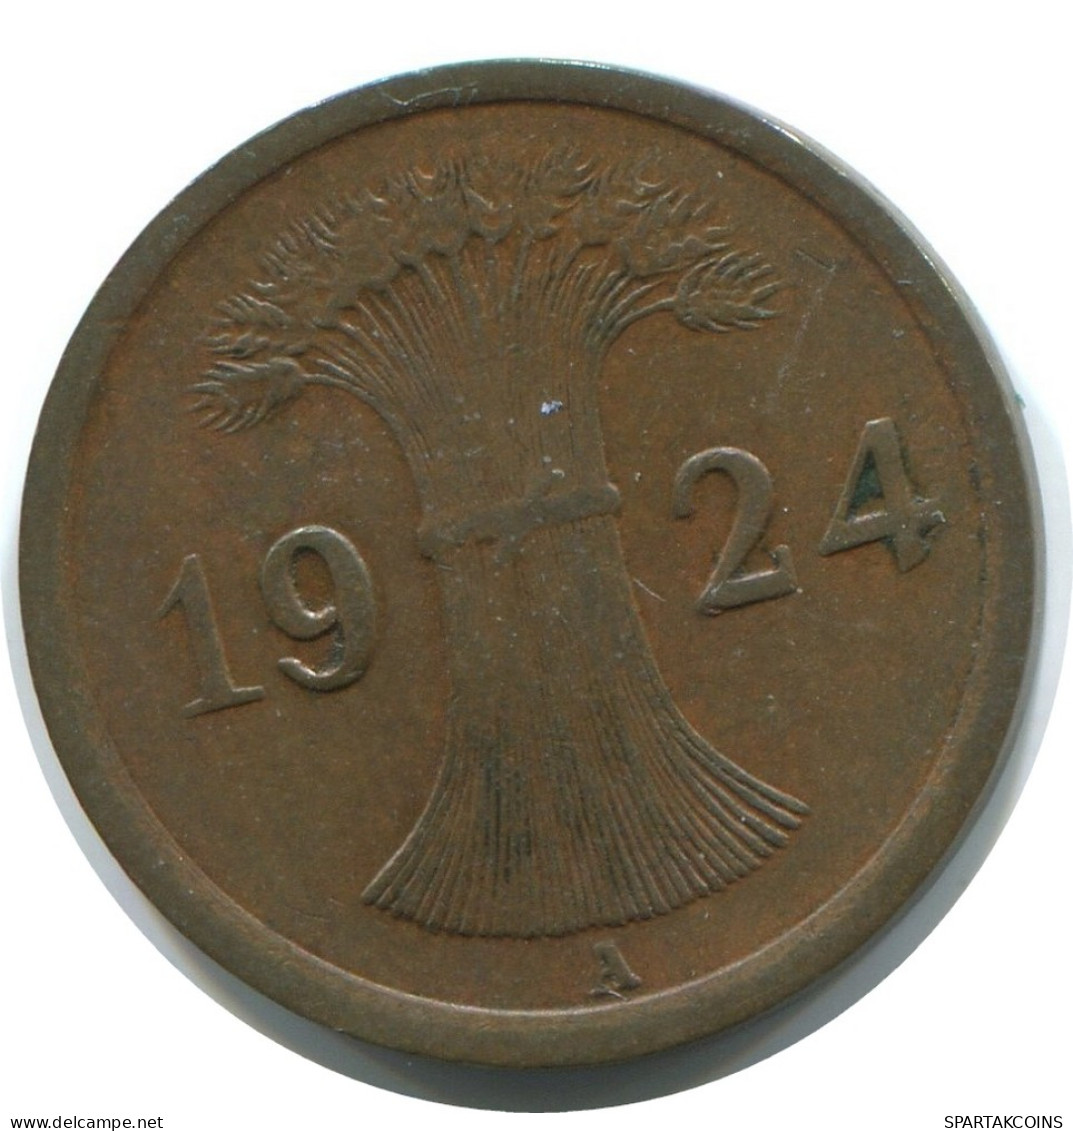 1 REICHSPFENNIG 1924 A GERMANY Coin #AE212.U - 1 Rentenpfennig & 1 Reichspfennig